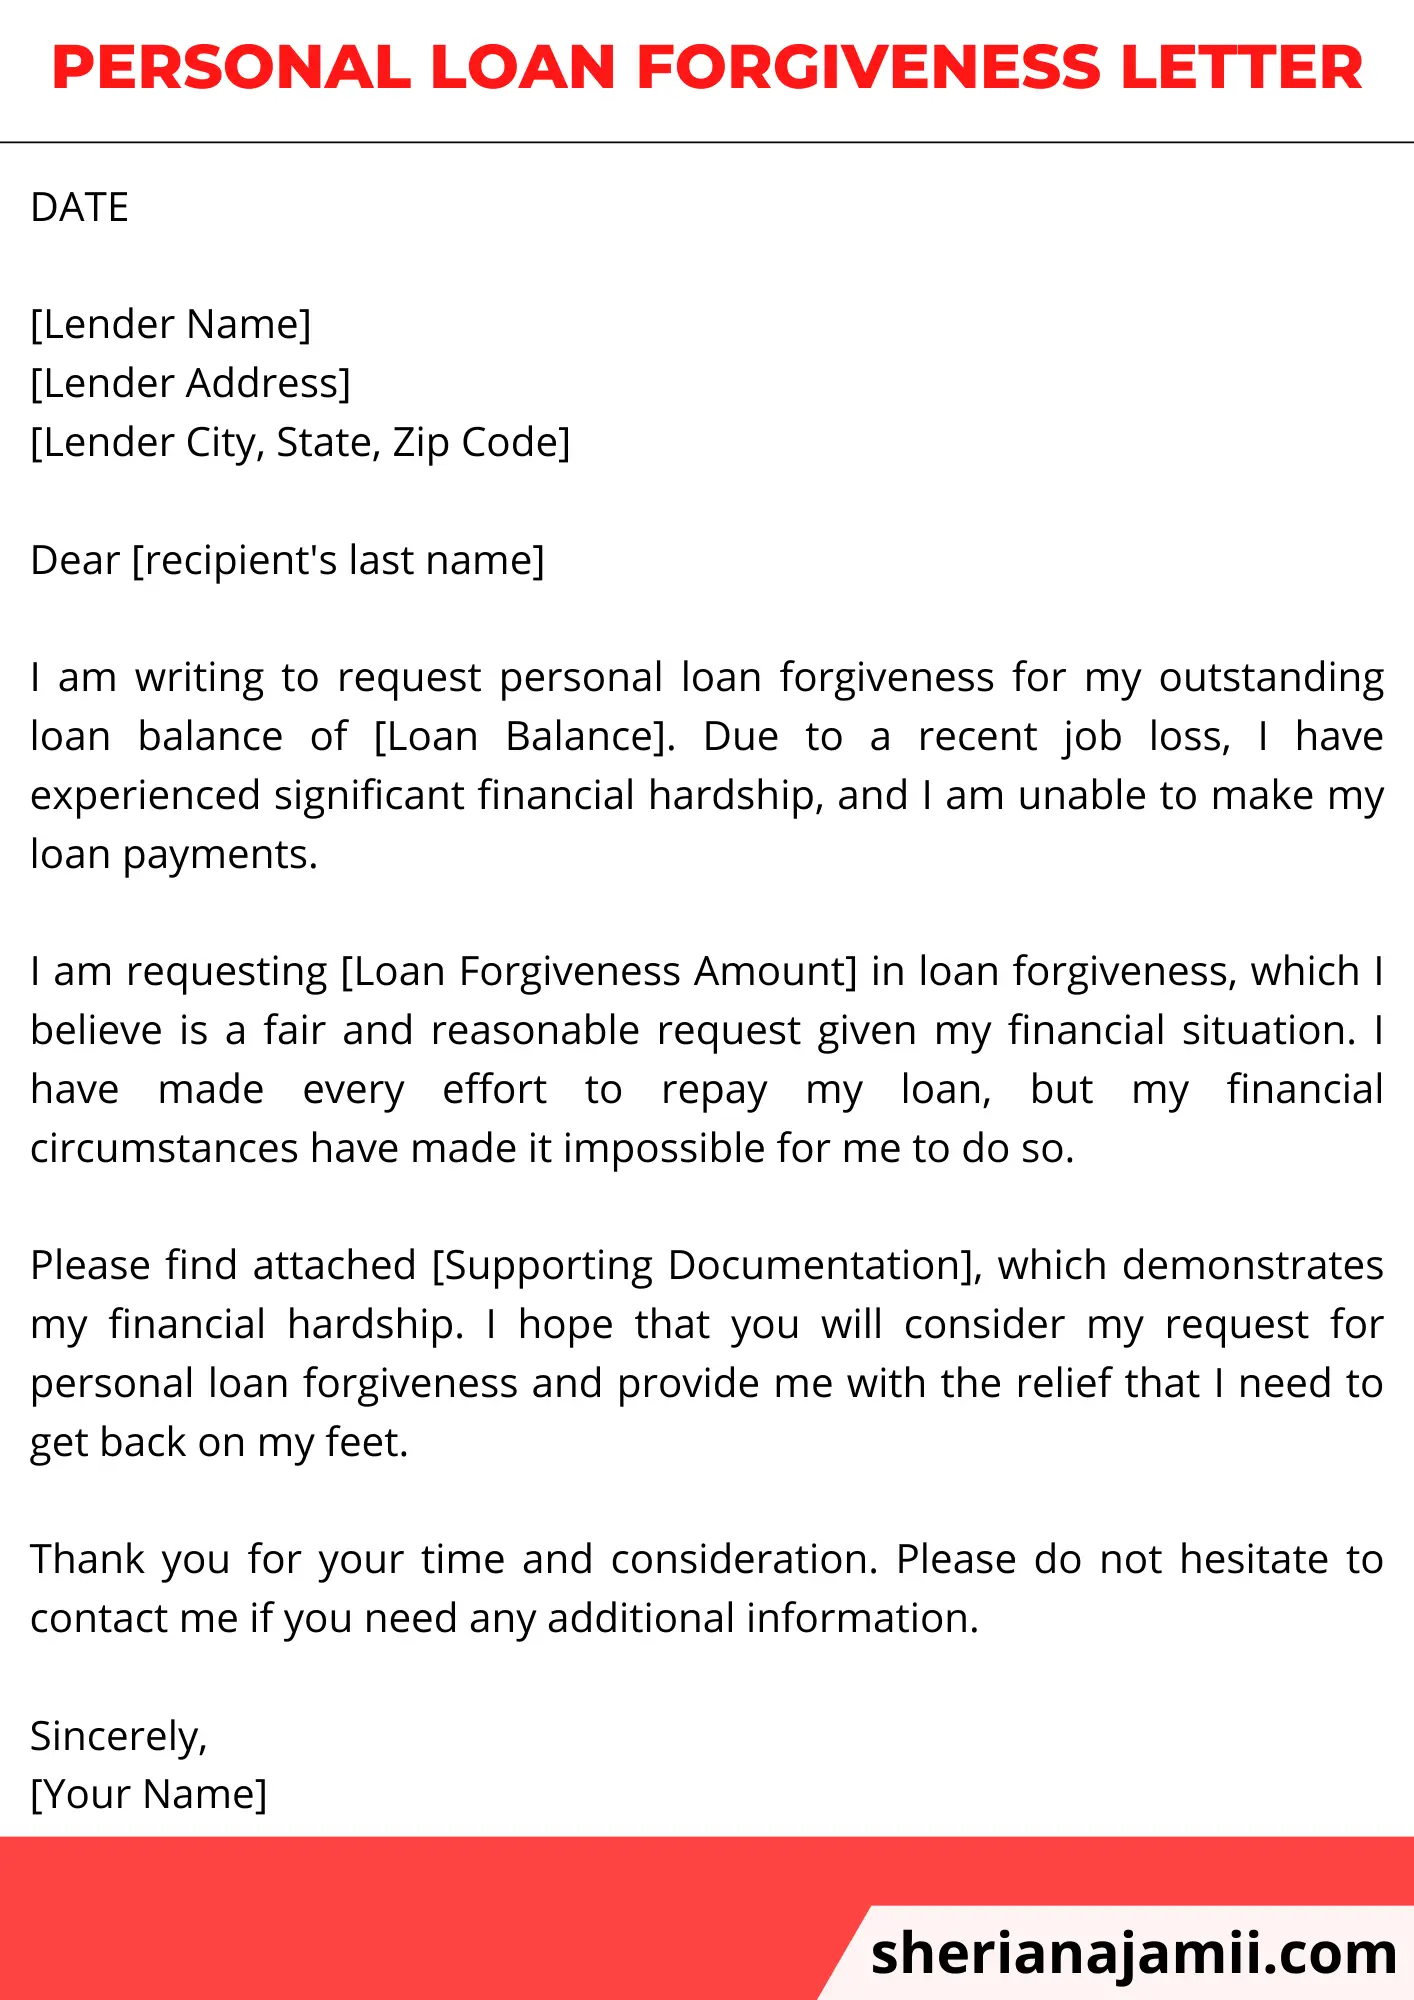 Personal Loan Forgiveness Letter, Personal Loan Forgiveness Letter Sample